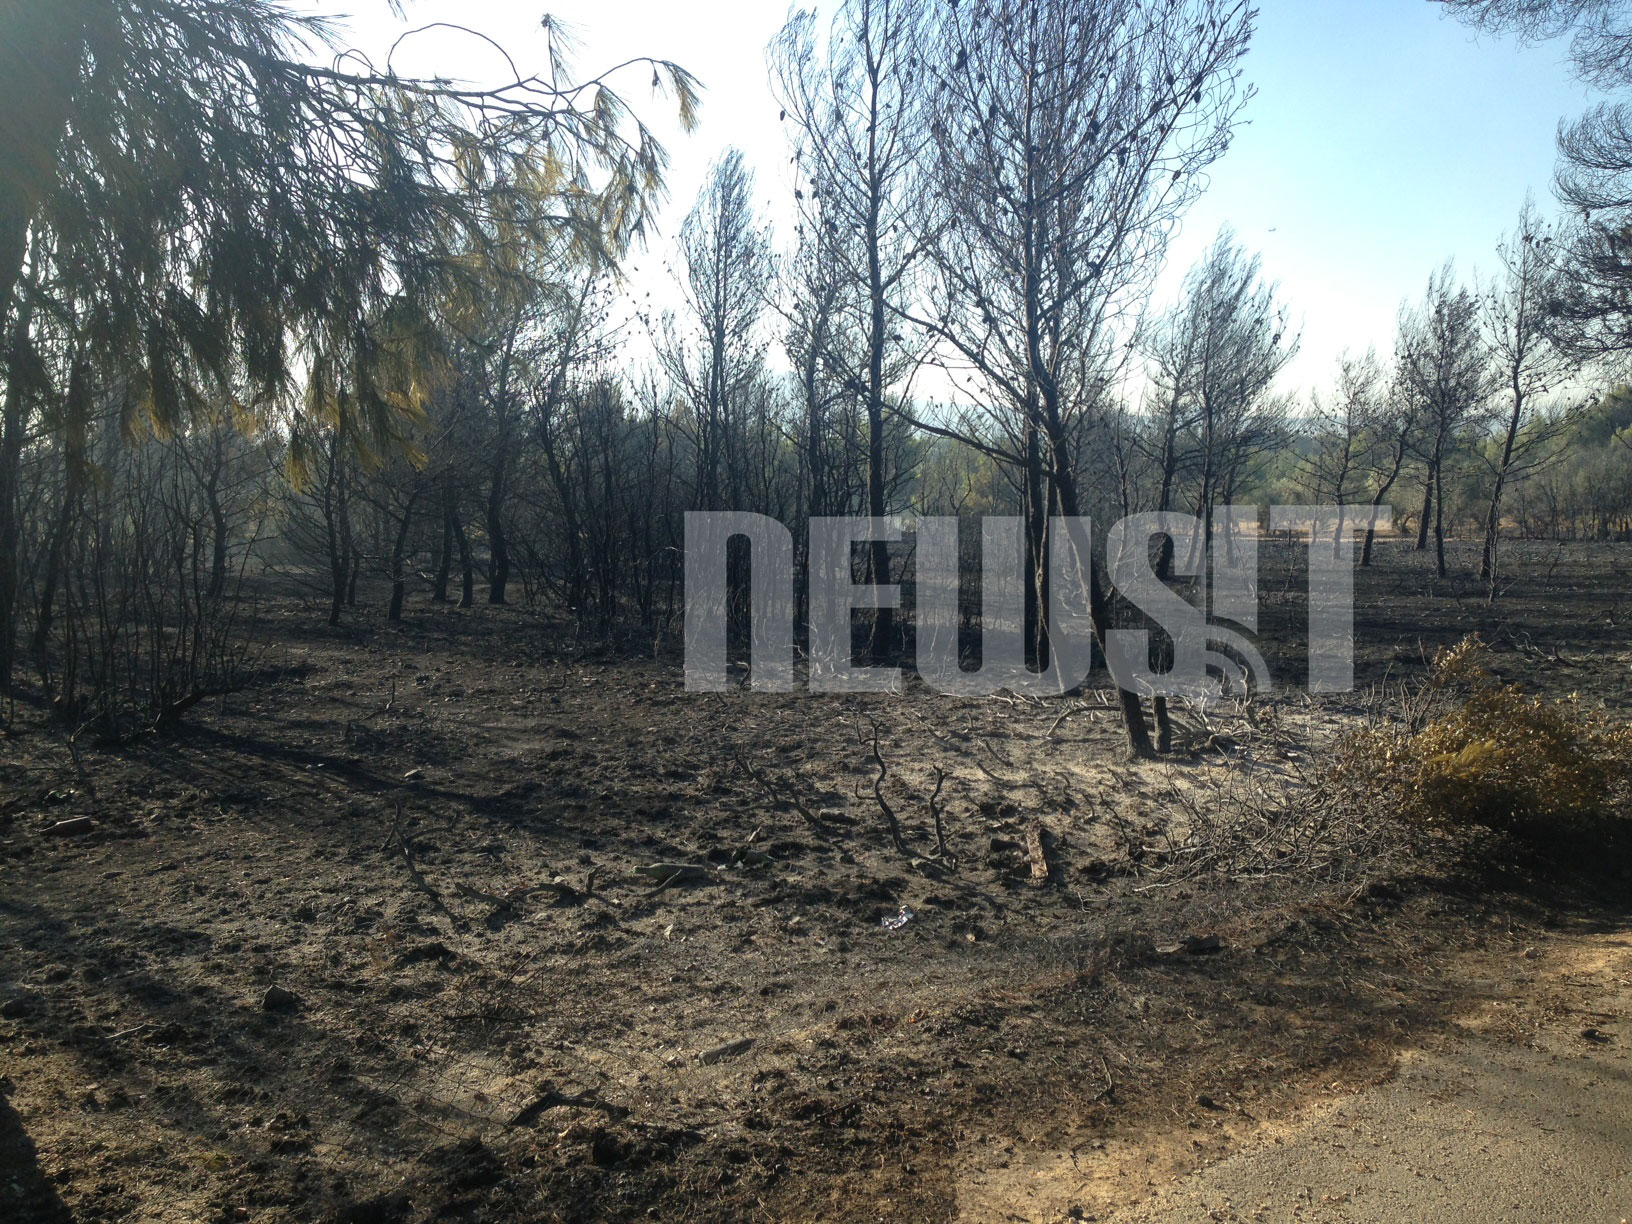 Η προσπάθεια πυροσβεστών, εθελοντών και κατοίκων να μη φτάσει η φωτιά στο δάσος της Πάρνηθας (που είχε καταστραφεί από την πυρκαγιά του 2007) ήταν τεράστια. Ευτυχώς, τελικά, στέφθηκε με επιτυχία - ΦΩΤΟΓΡΑΦΙΑ NEWSIT